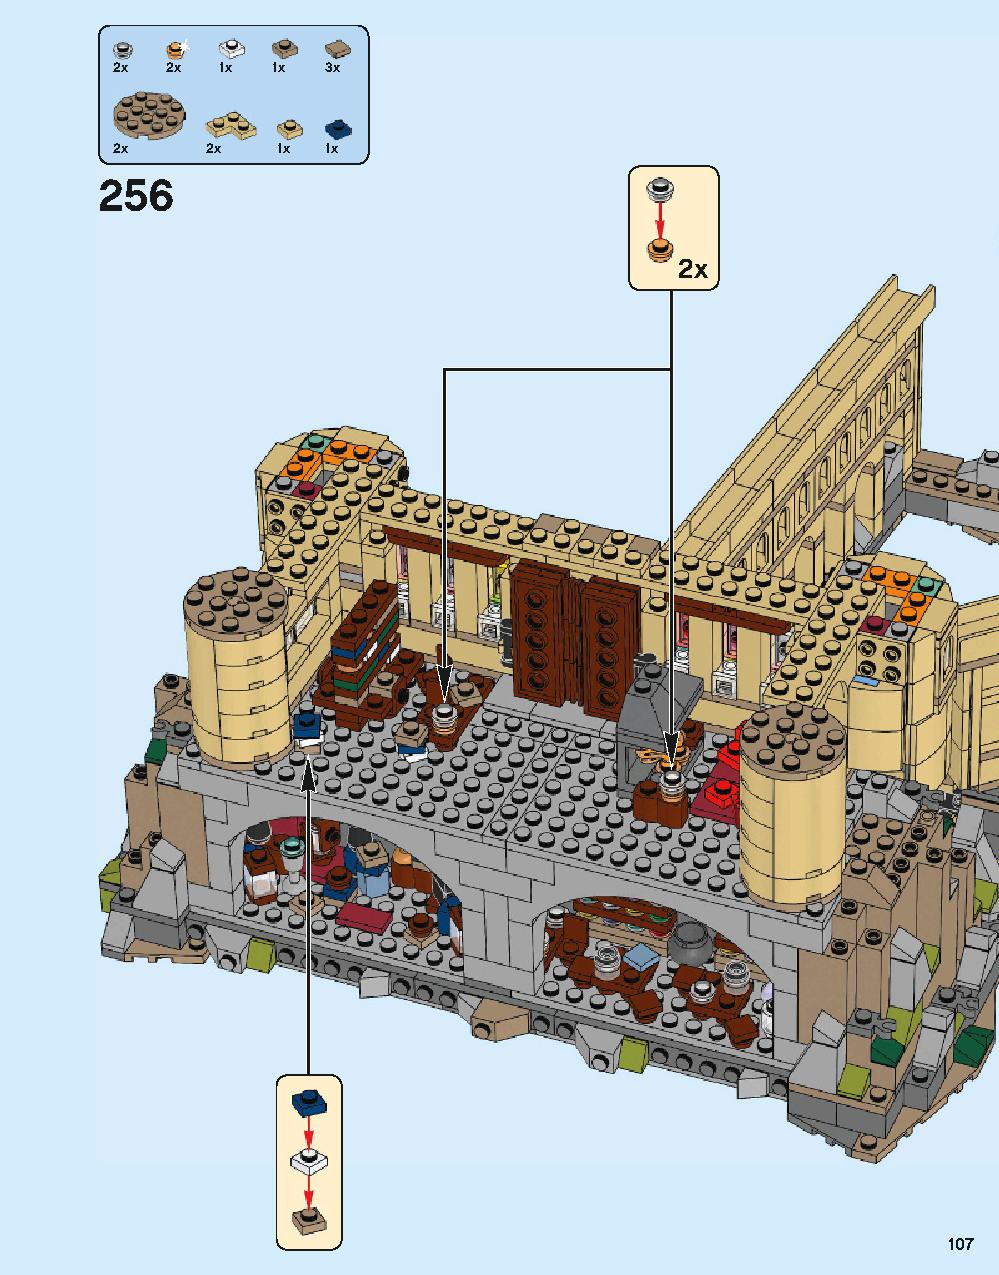 ホグワーツ城 71043 レゴの商品情報 レゴの説明書・組立方法 107 page